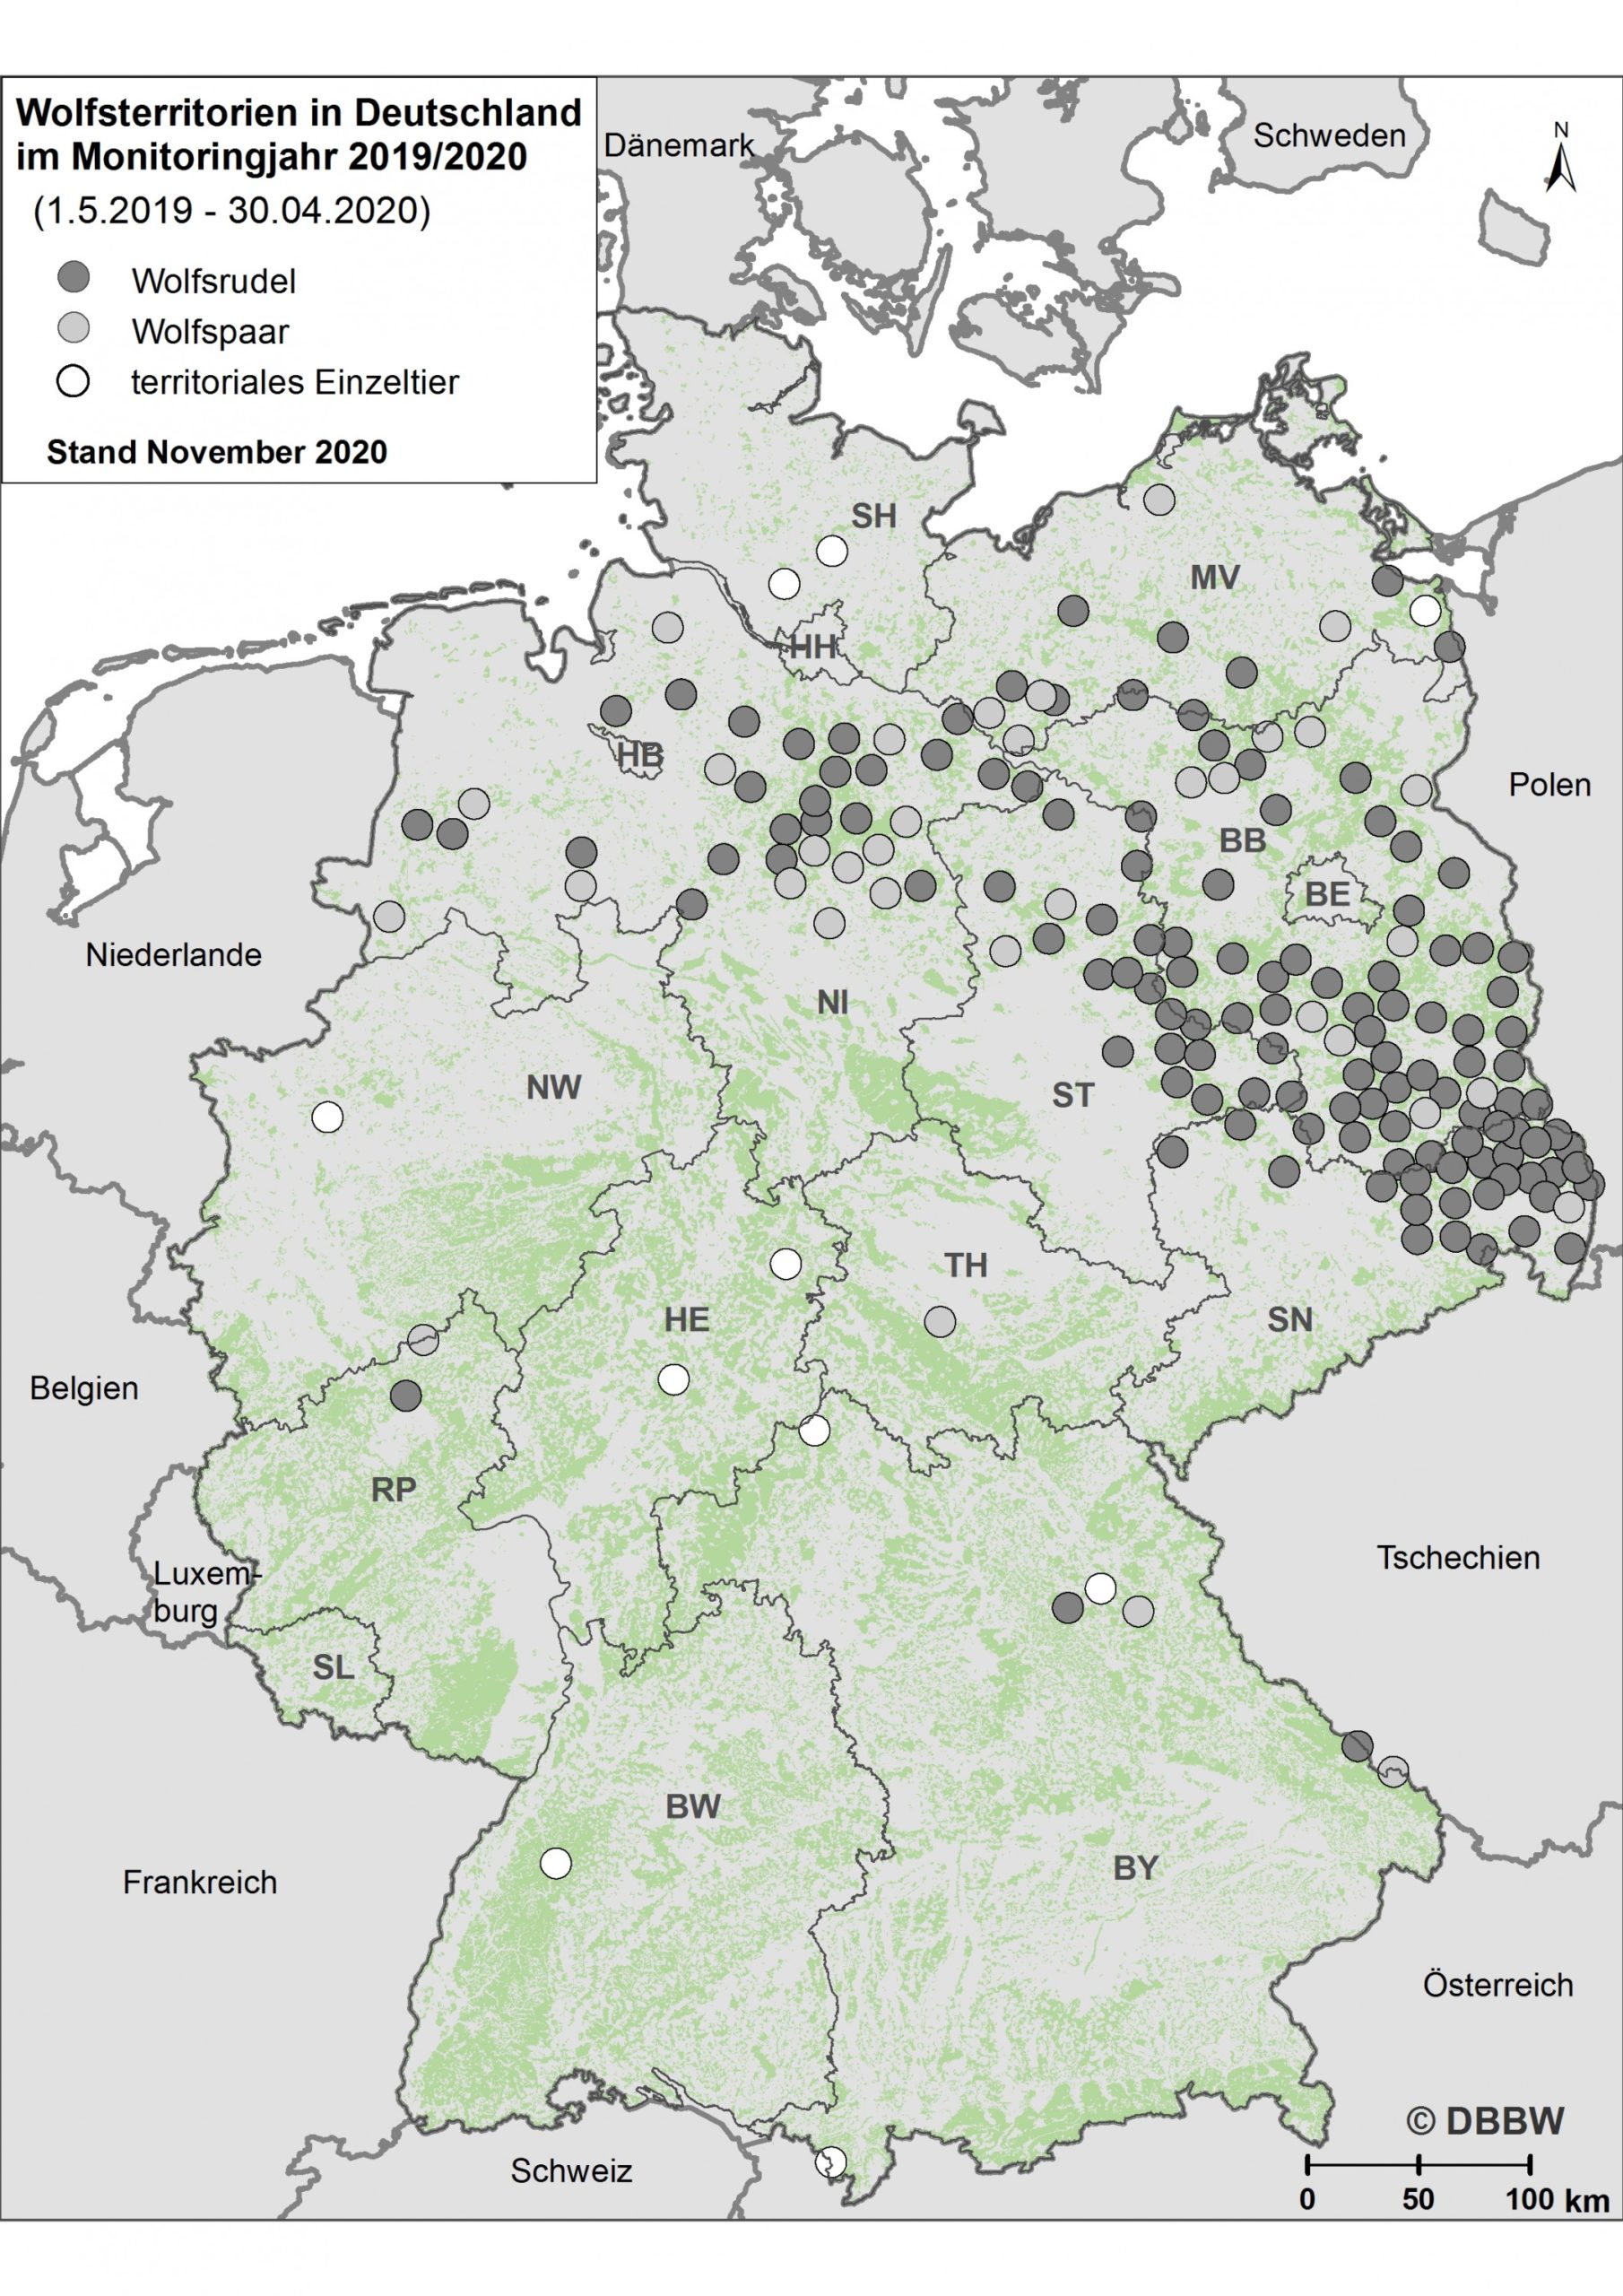 Wolfsterritorien in Deutschland im Monitoringjahr 2019/20